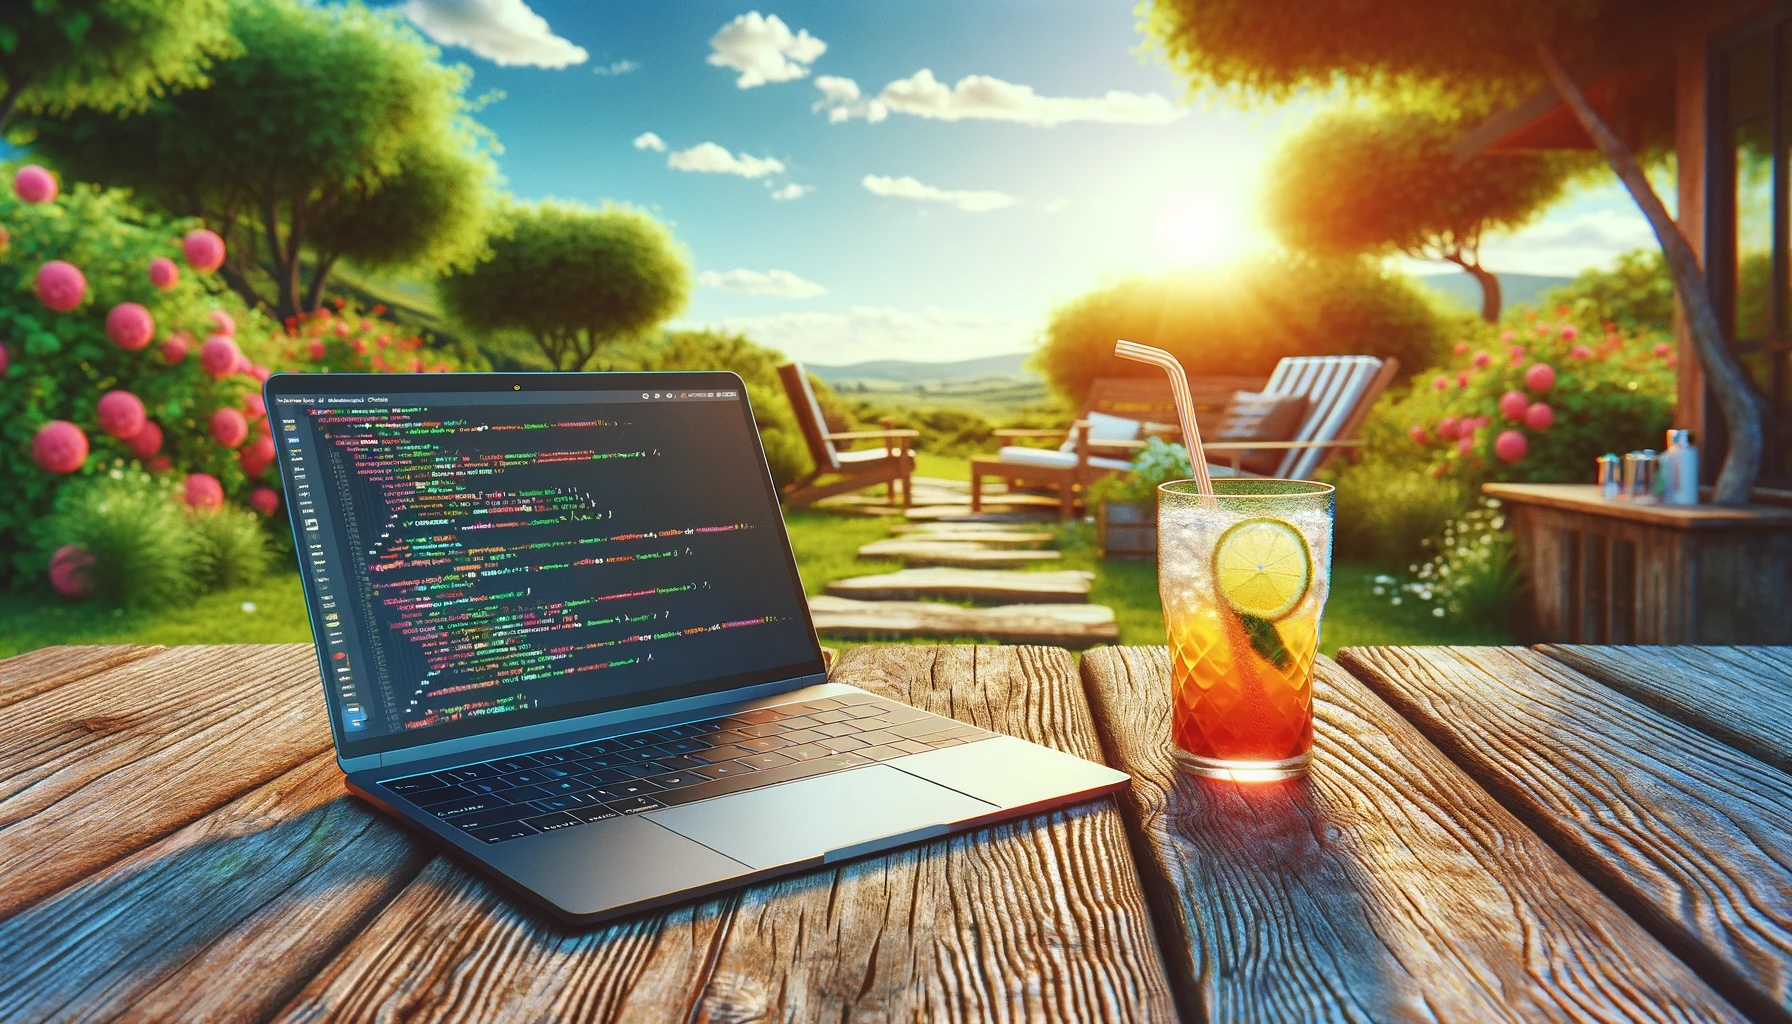 Sommerliches Bild mit Computer auf einem Gartentisch